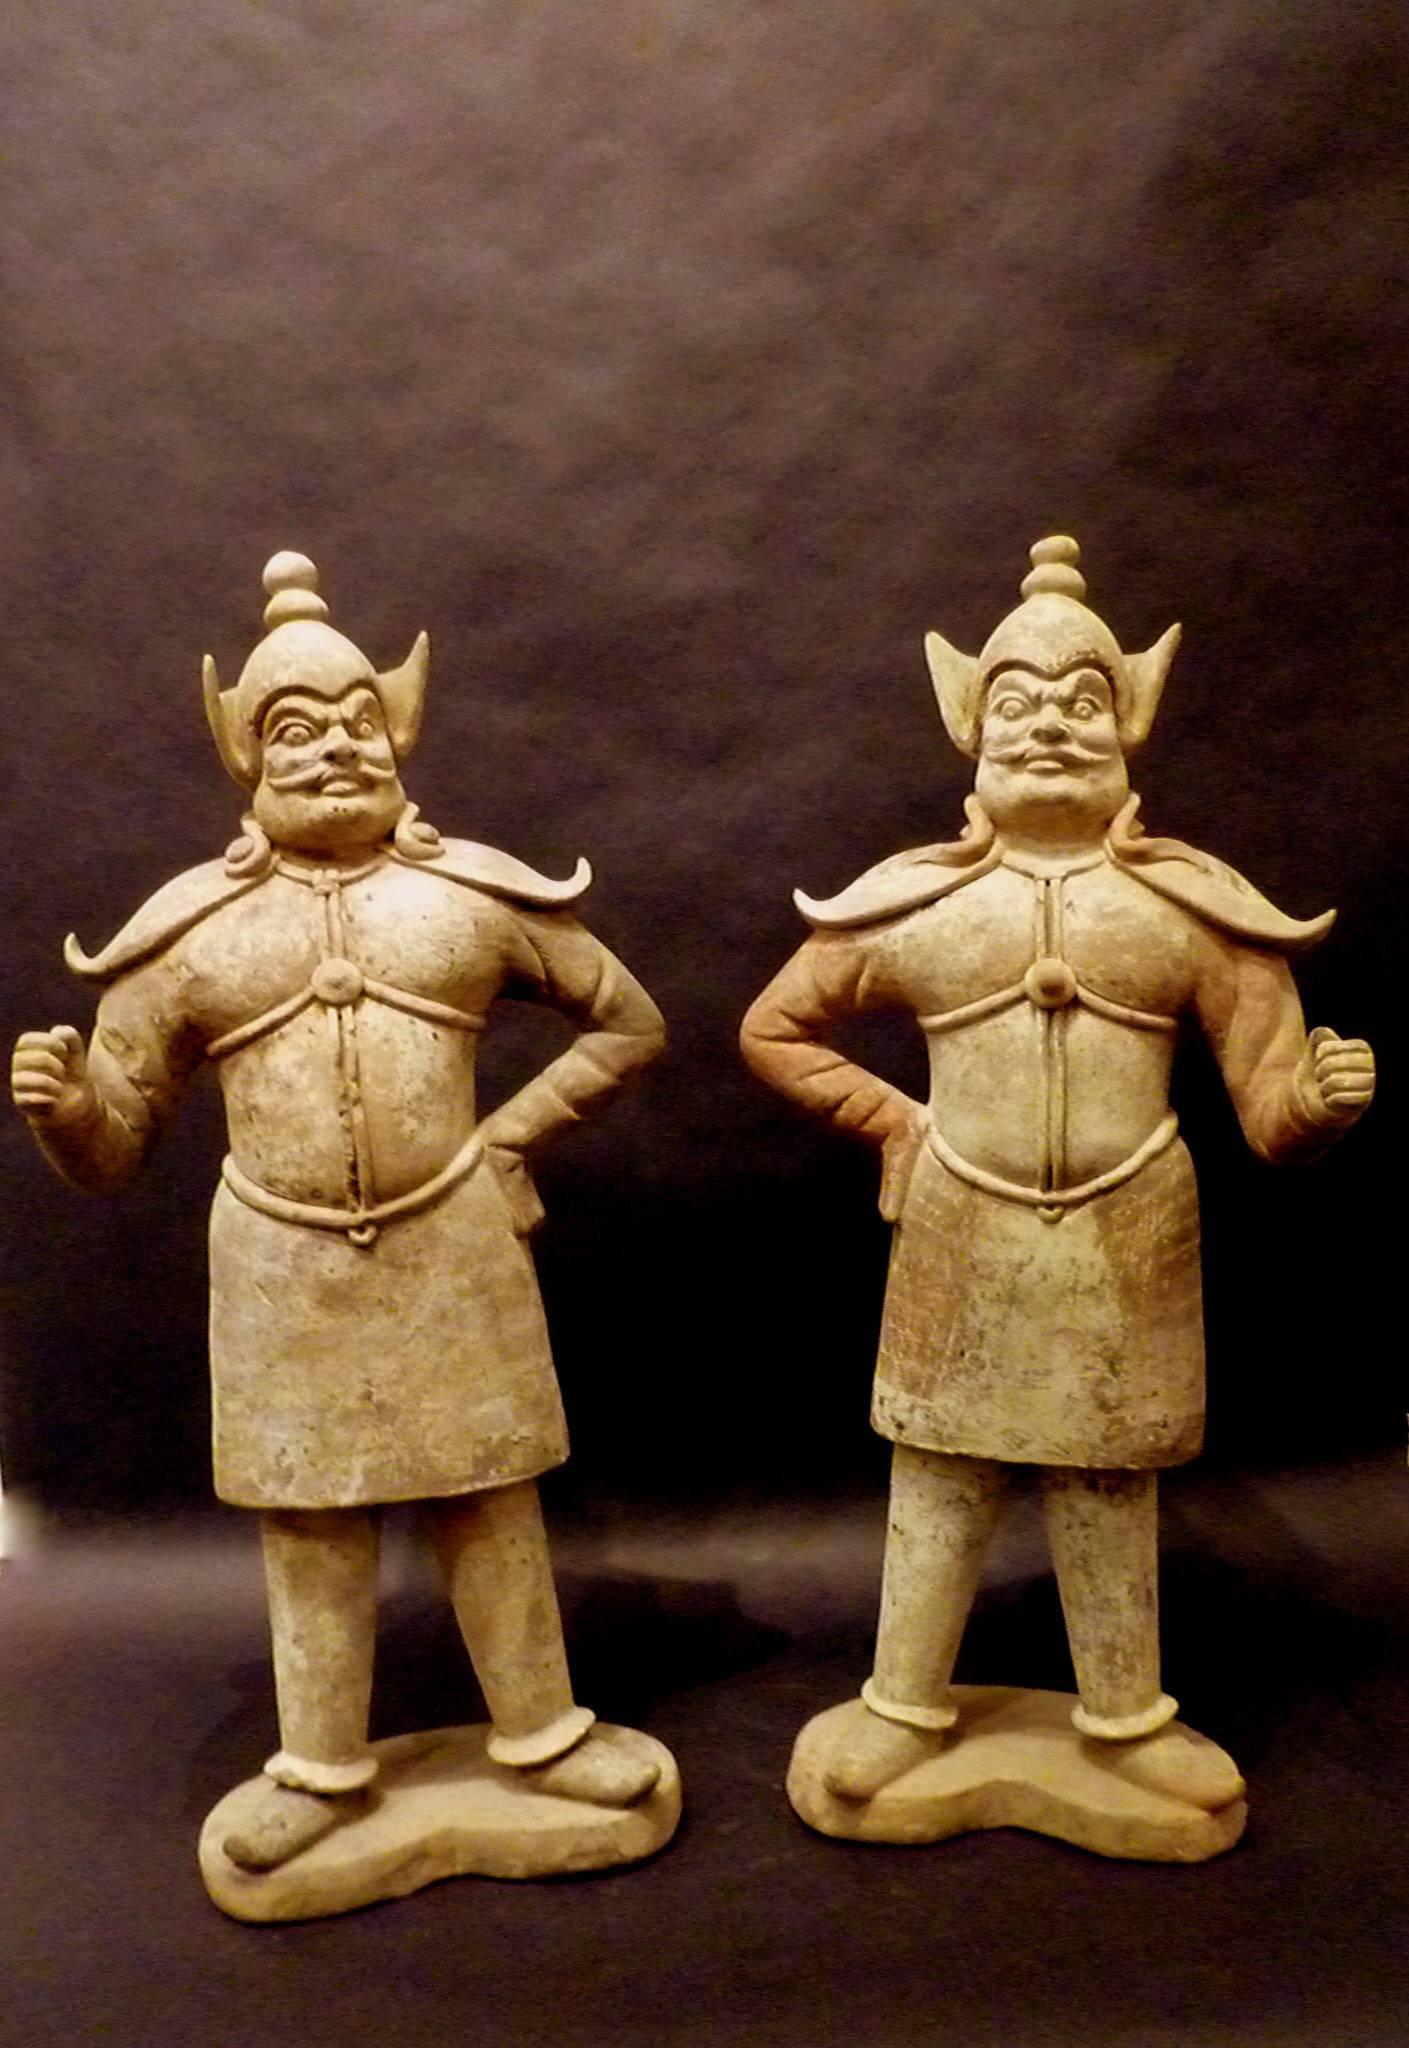 Ein Paar sehr raffinierter stehender Keramikstatuen von Wächtern, dramatischer Gesichtsausdruck, schöne Details, frühe Tang-Dynastie 618-907, kommen mit einem Oxford-Authentifizierungs-TL-Prüfzertifikat, Oxford-Prüfnummern 102s48.